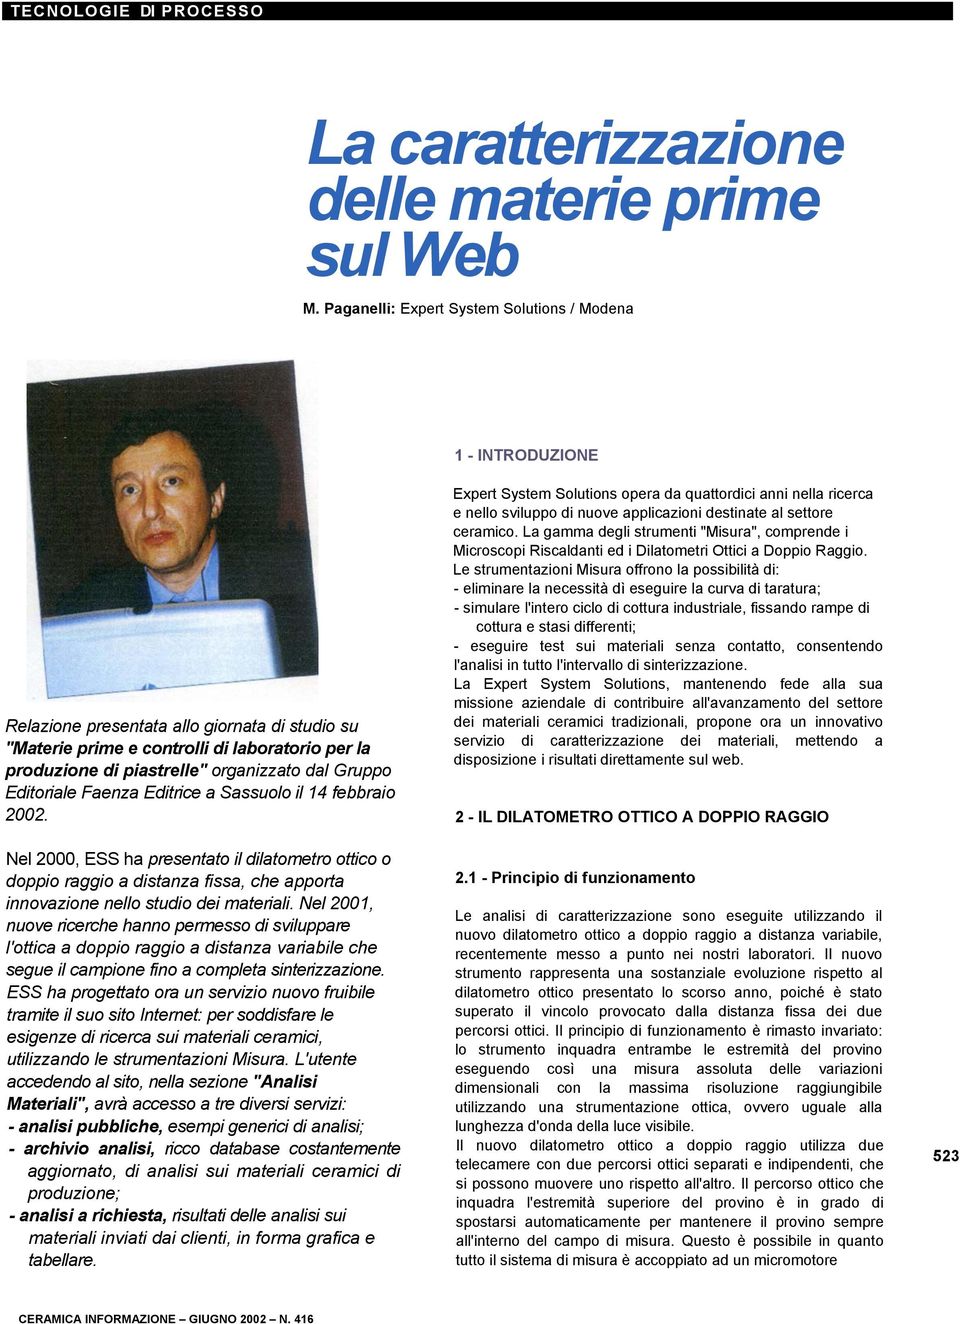 Gruppo Editoriale Faenza Editrice a Sassuolo il 14 febbraio 2002.